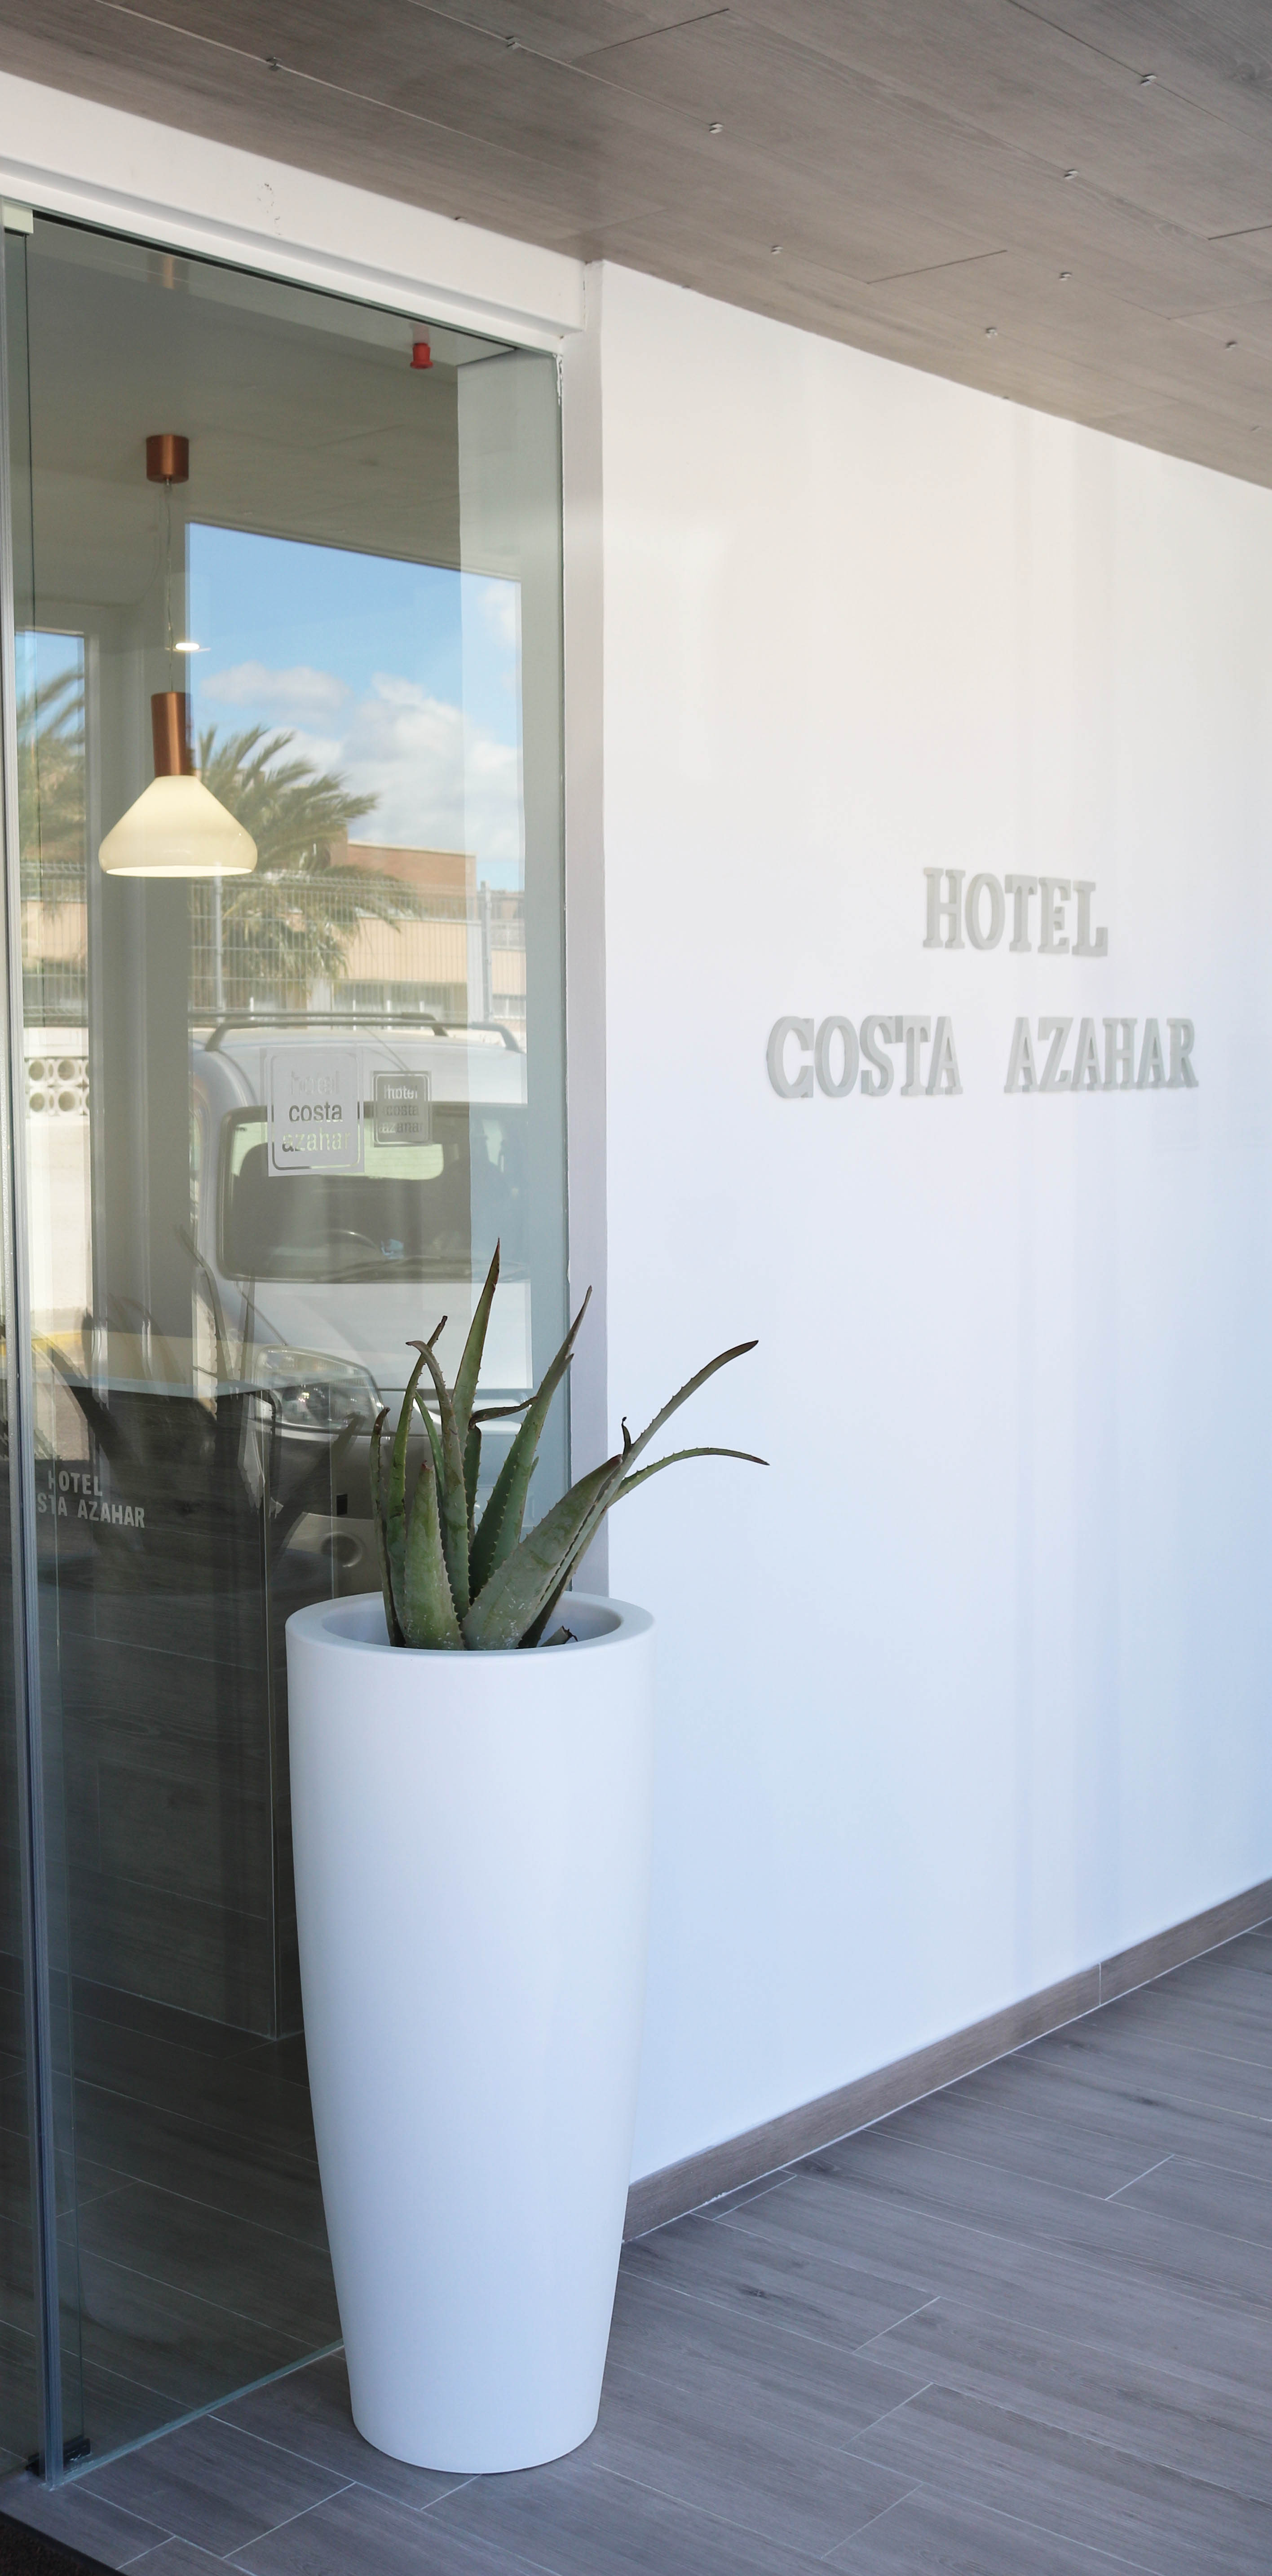 COSTA AZAHAR HOTELES